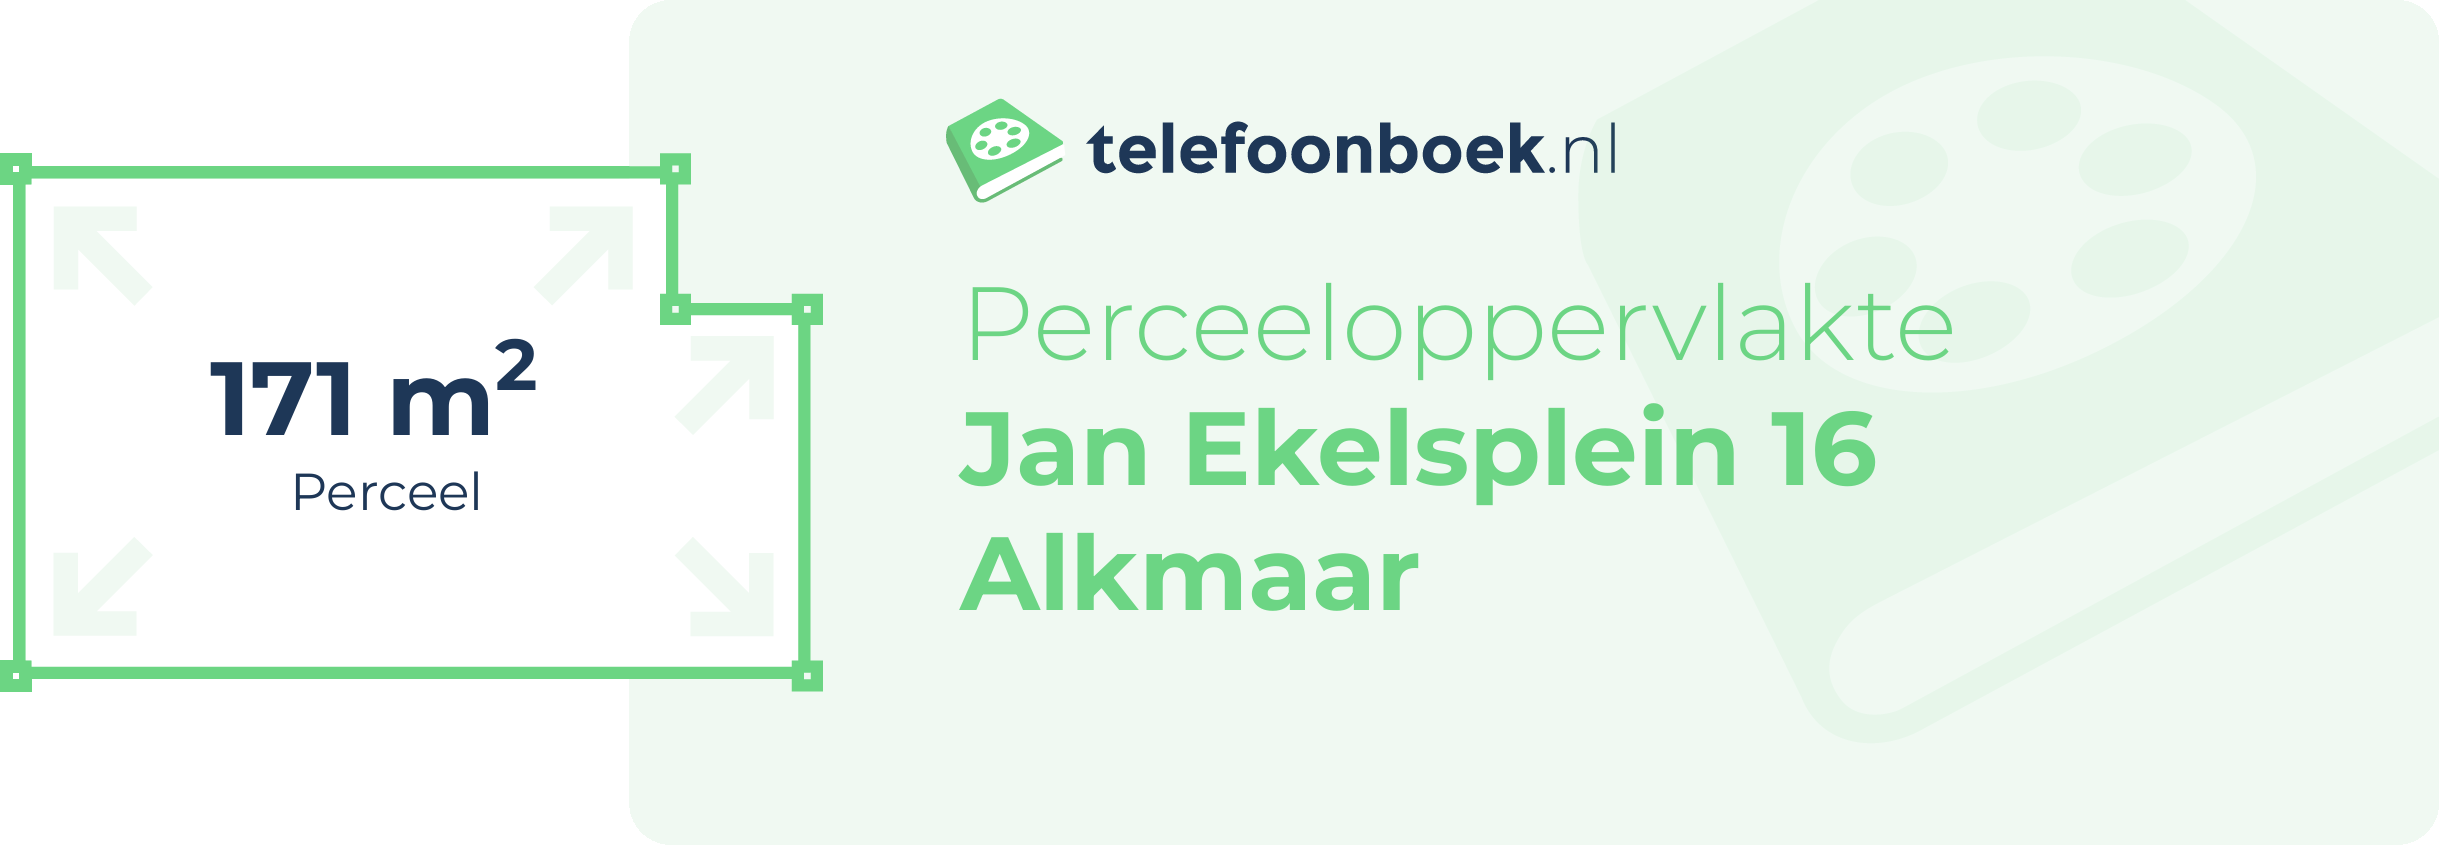 Perceeloppervlakte Jan Ekelsplein 16 Alkmaar